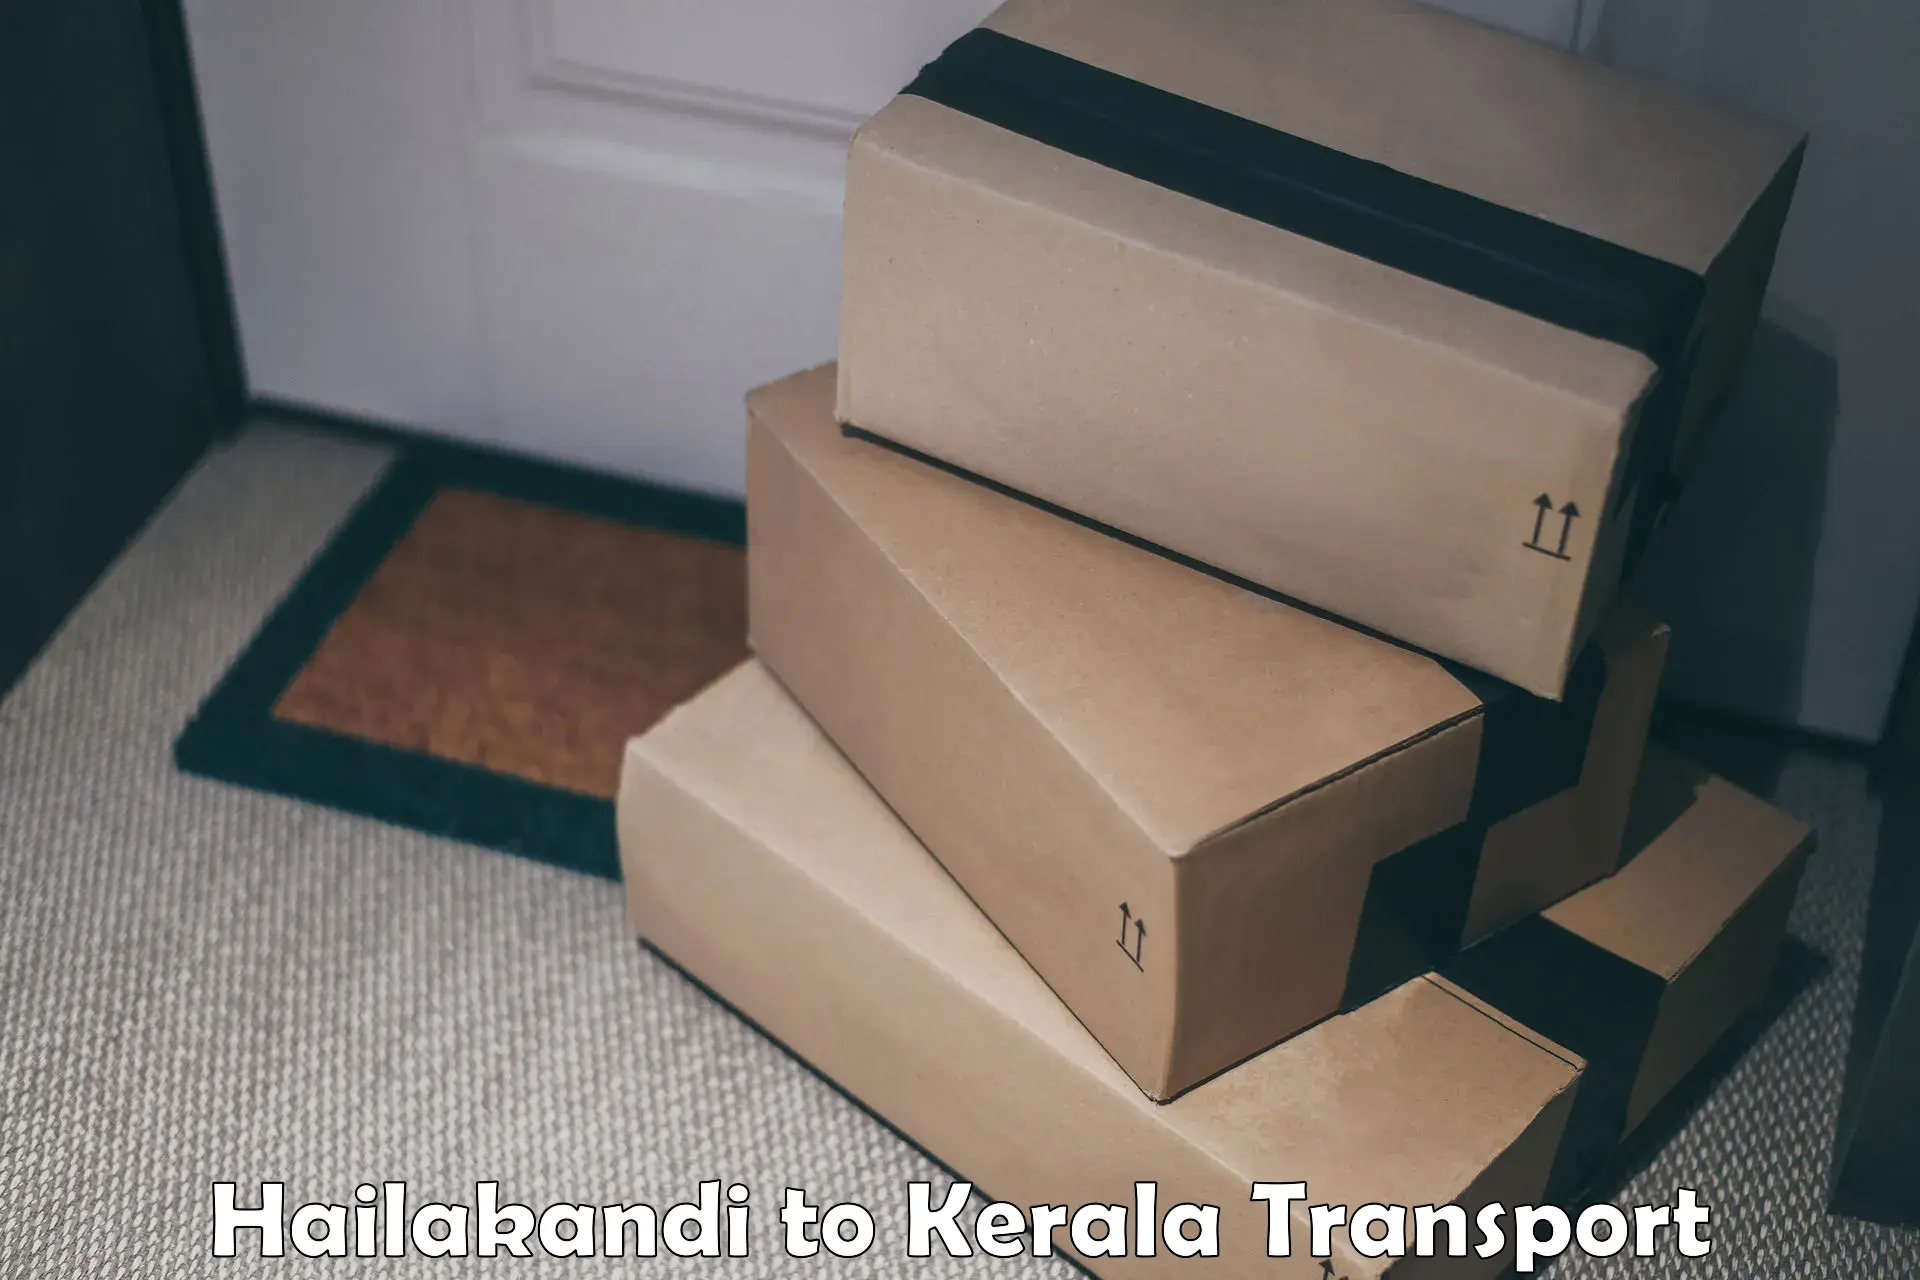 Transport in sharing Hailakandi to Pallikkara